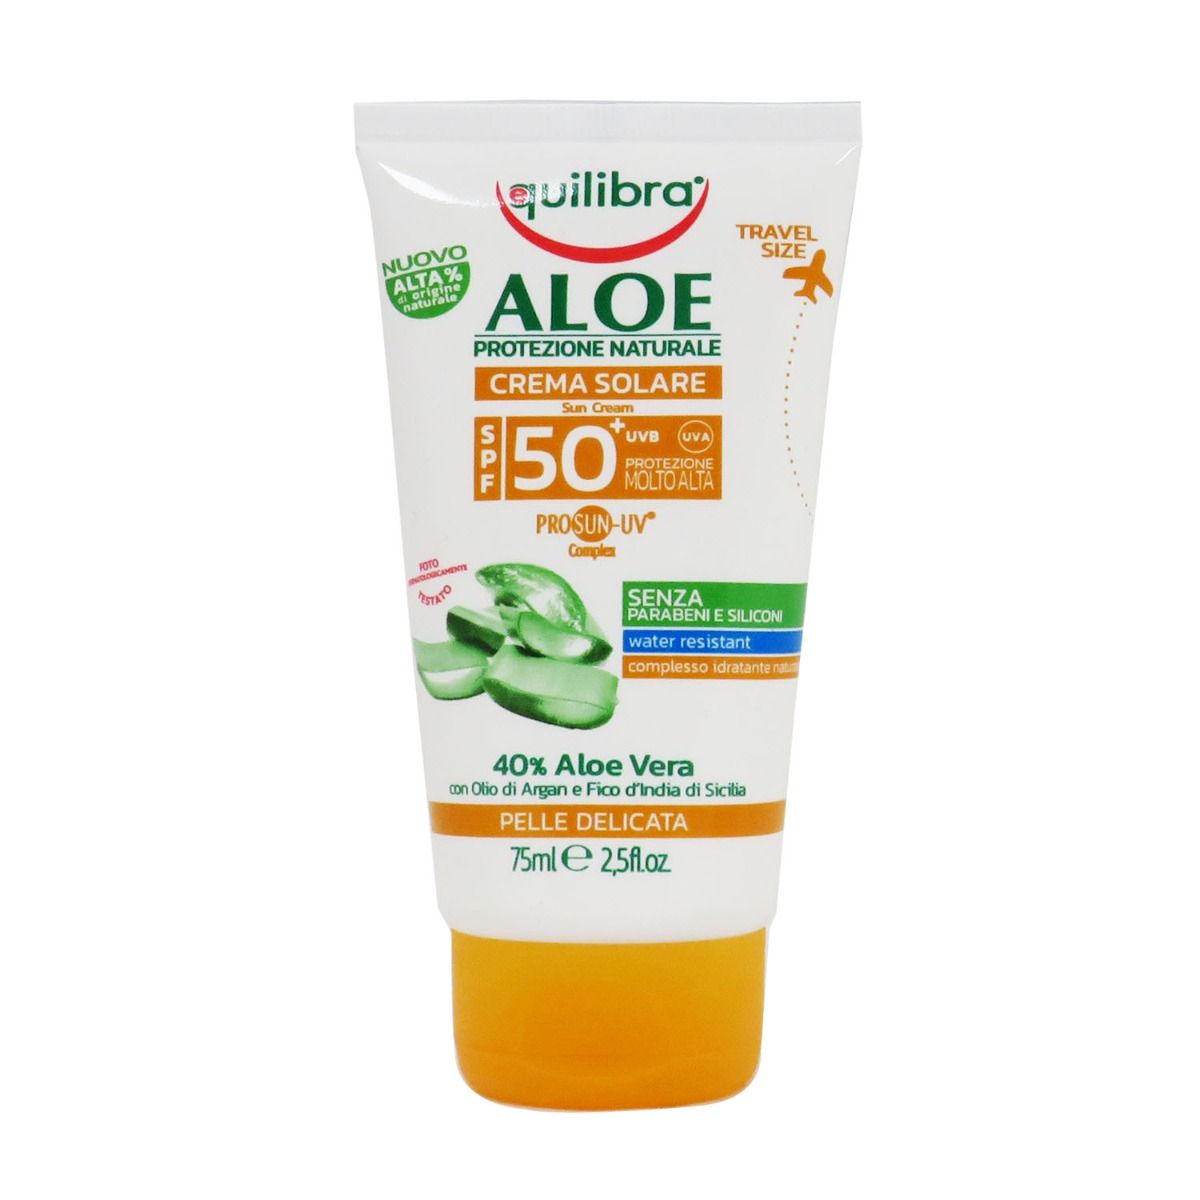 Image of Equilibra Crema Solare Aloe SPF 50 Molto Alta Travel Size 8000137014514